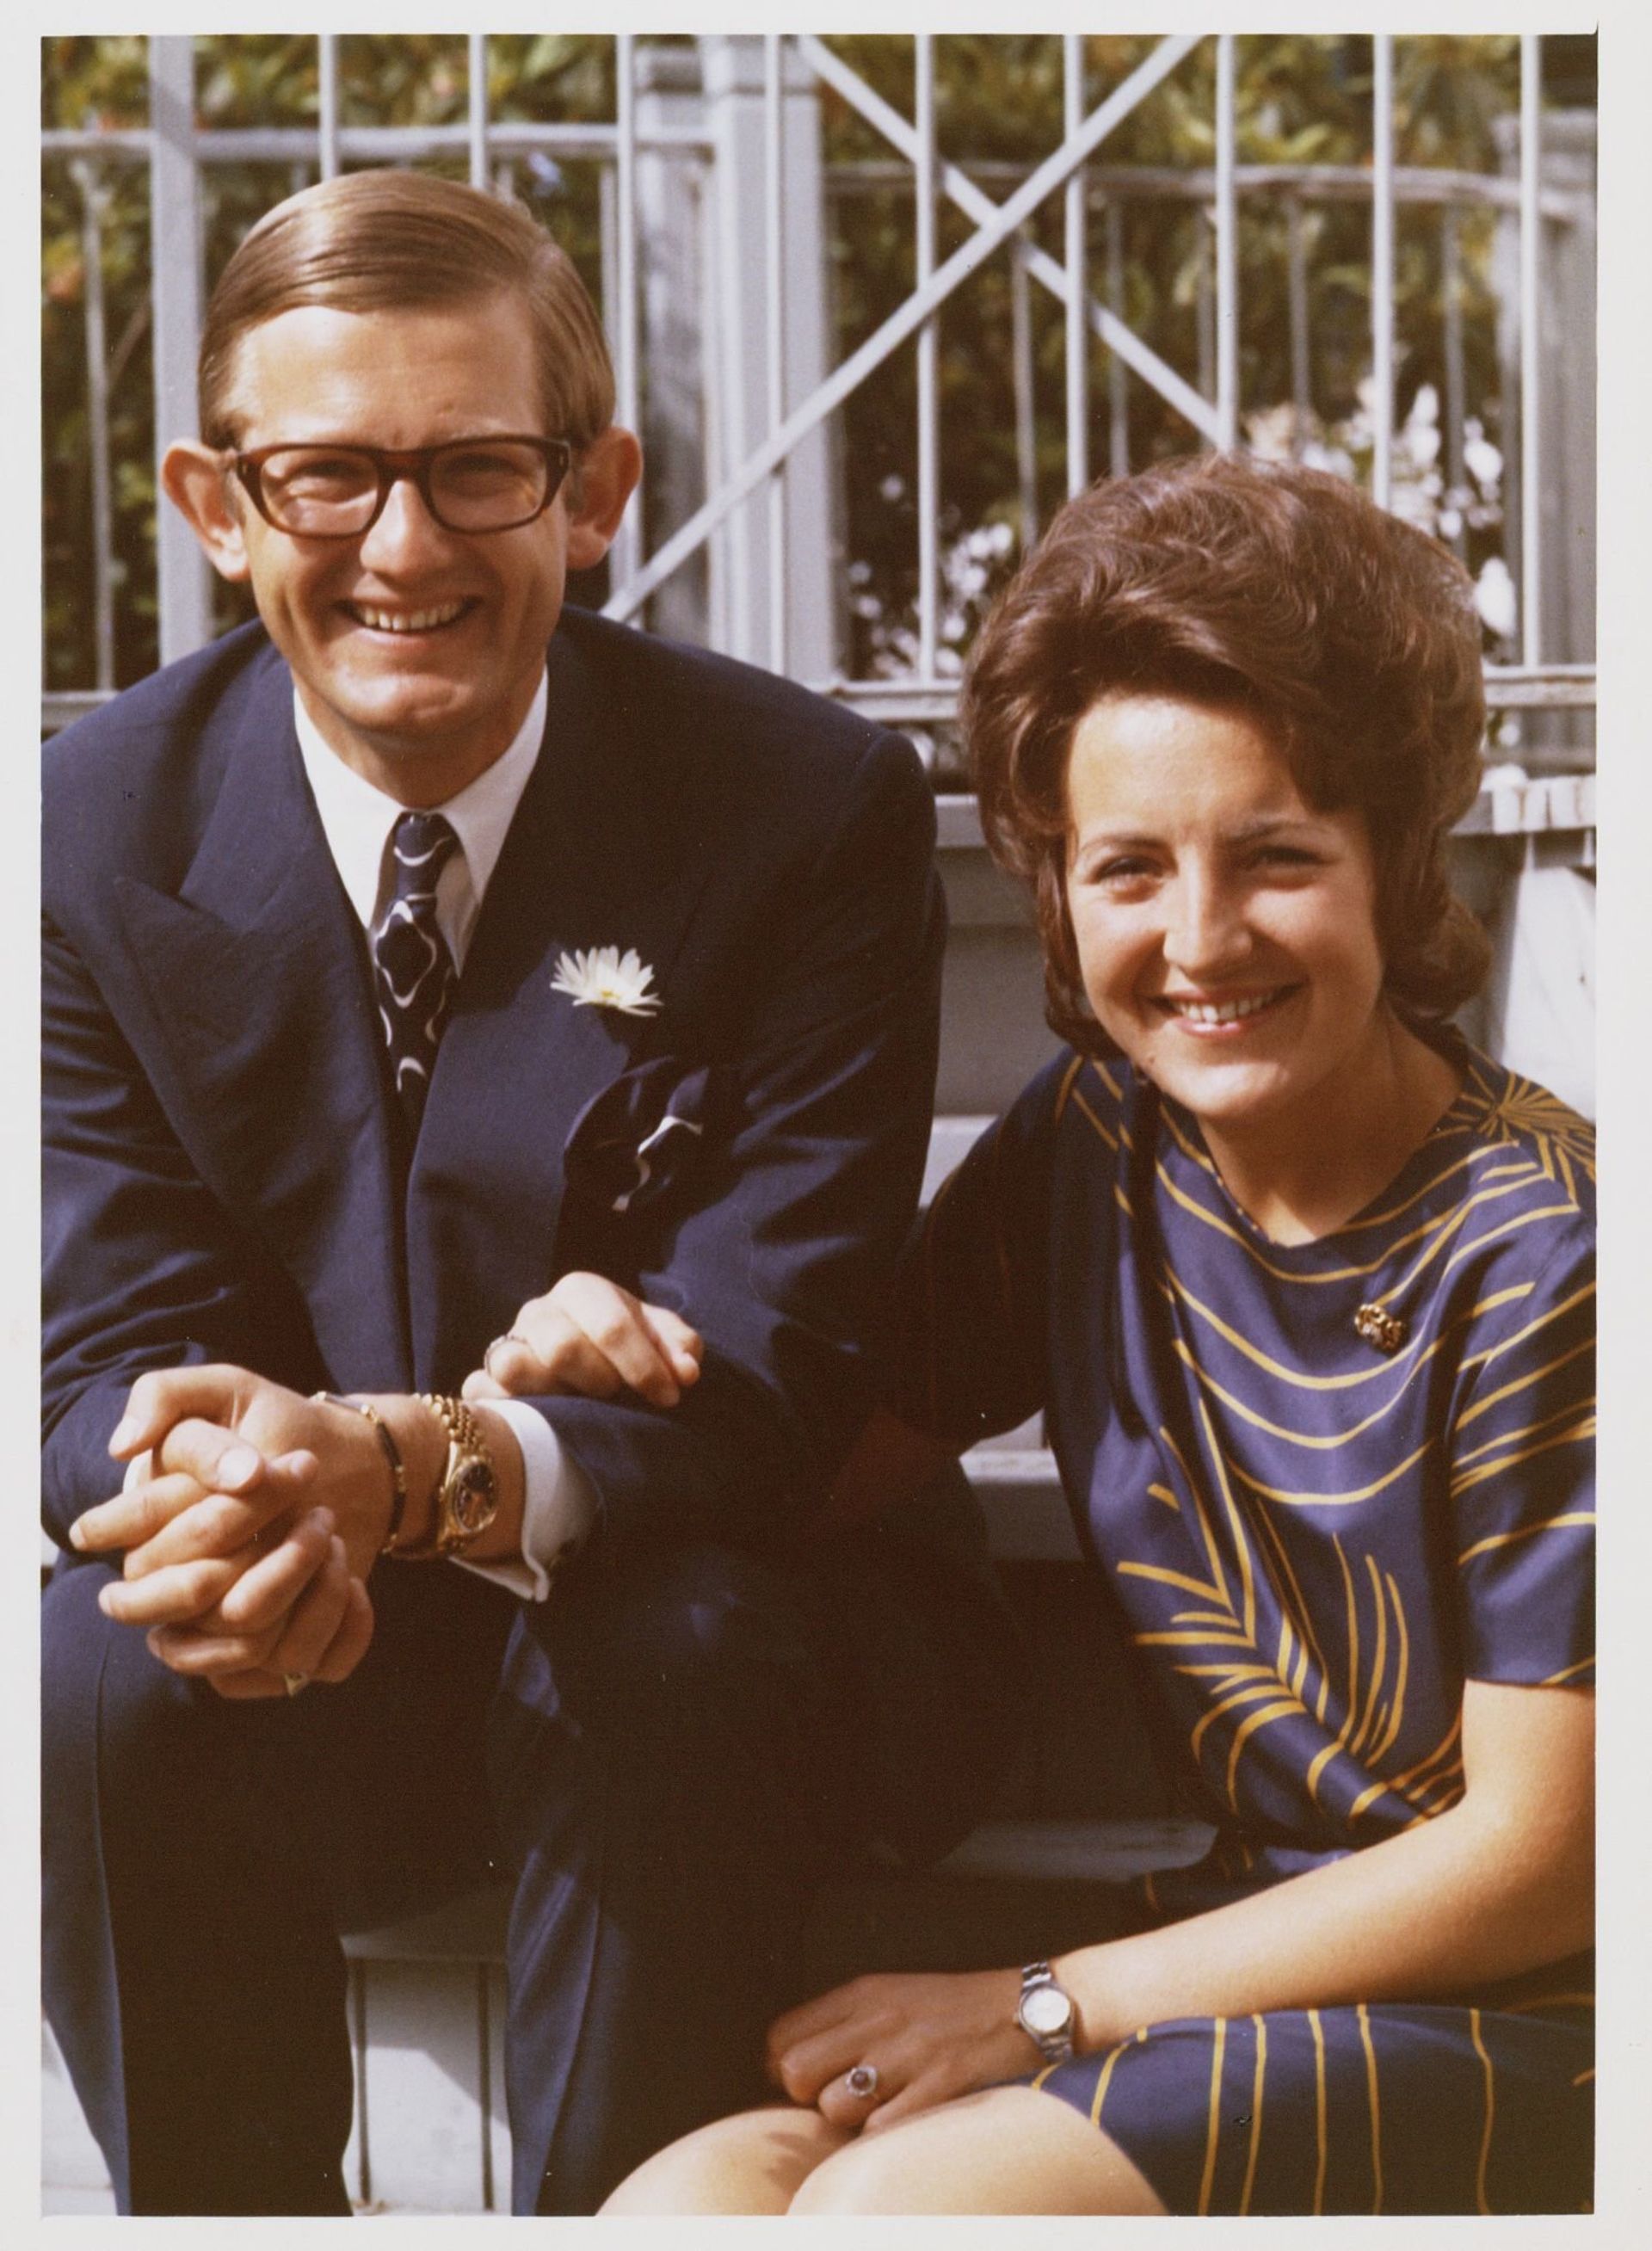 Een zonnige foto van Pieter en Margriet uit 1971.